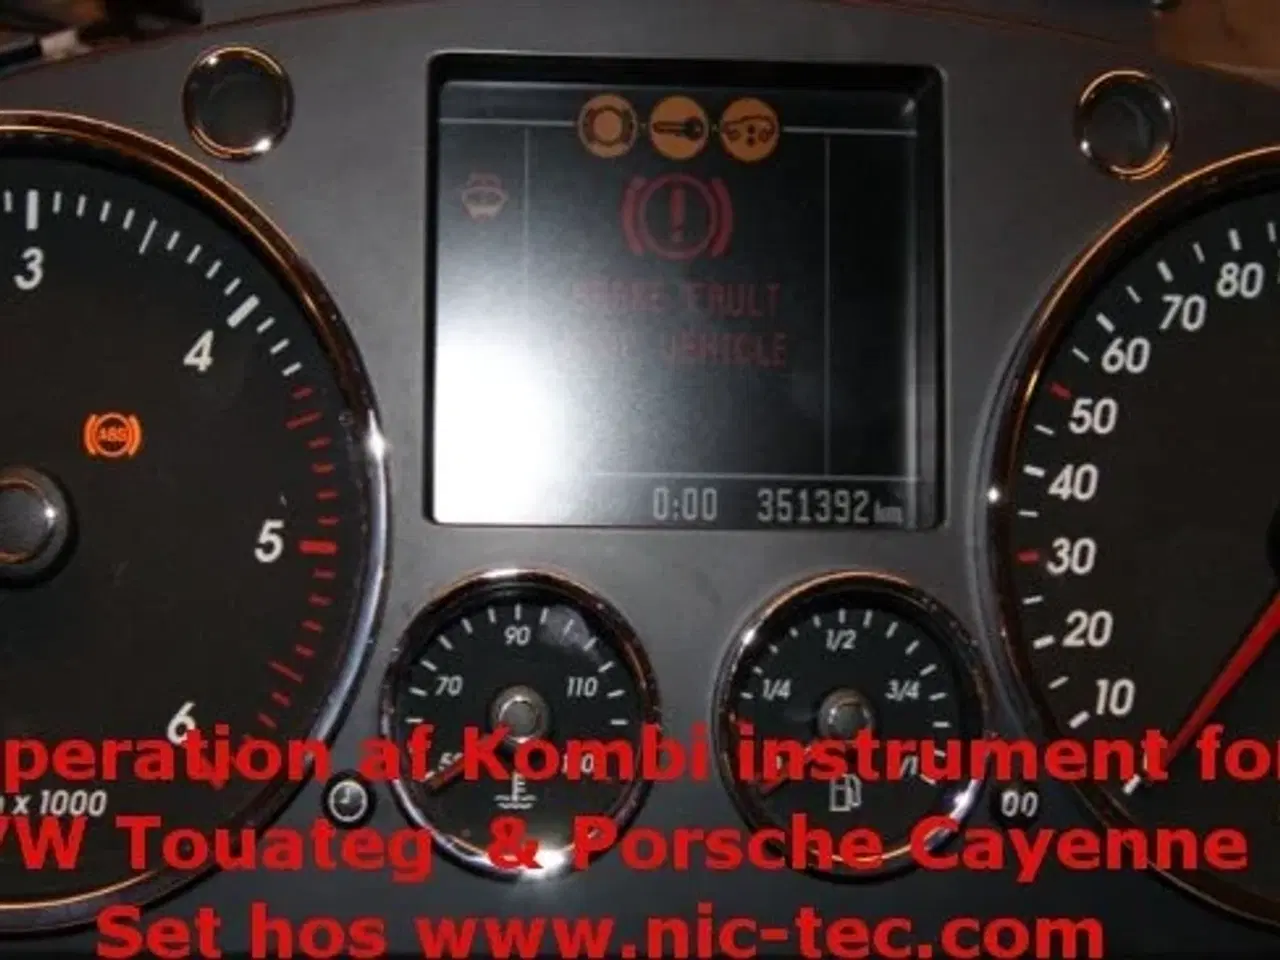 Billede 1 - VW Touareg - Porsche Cayenne Instrument rep